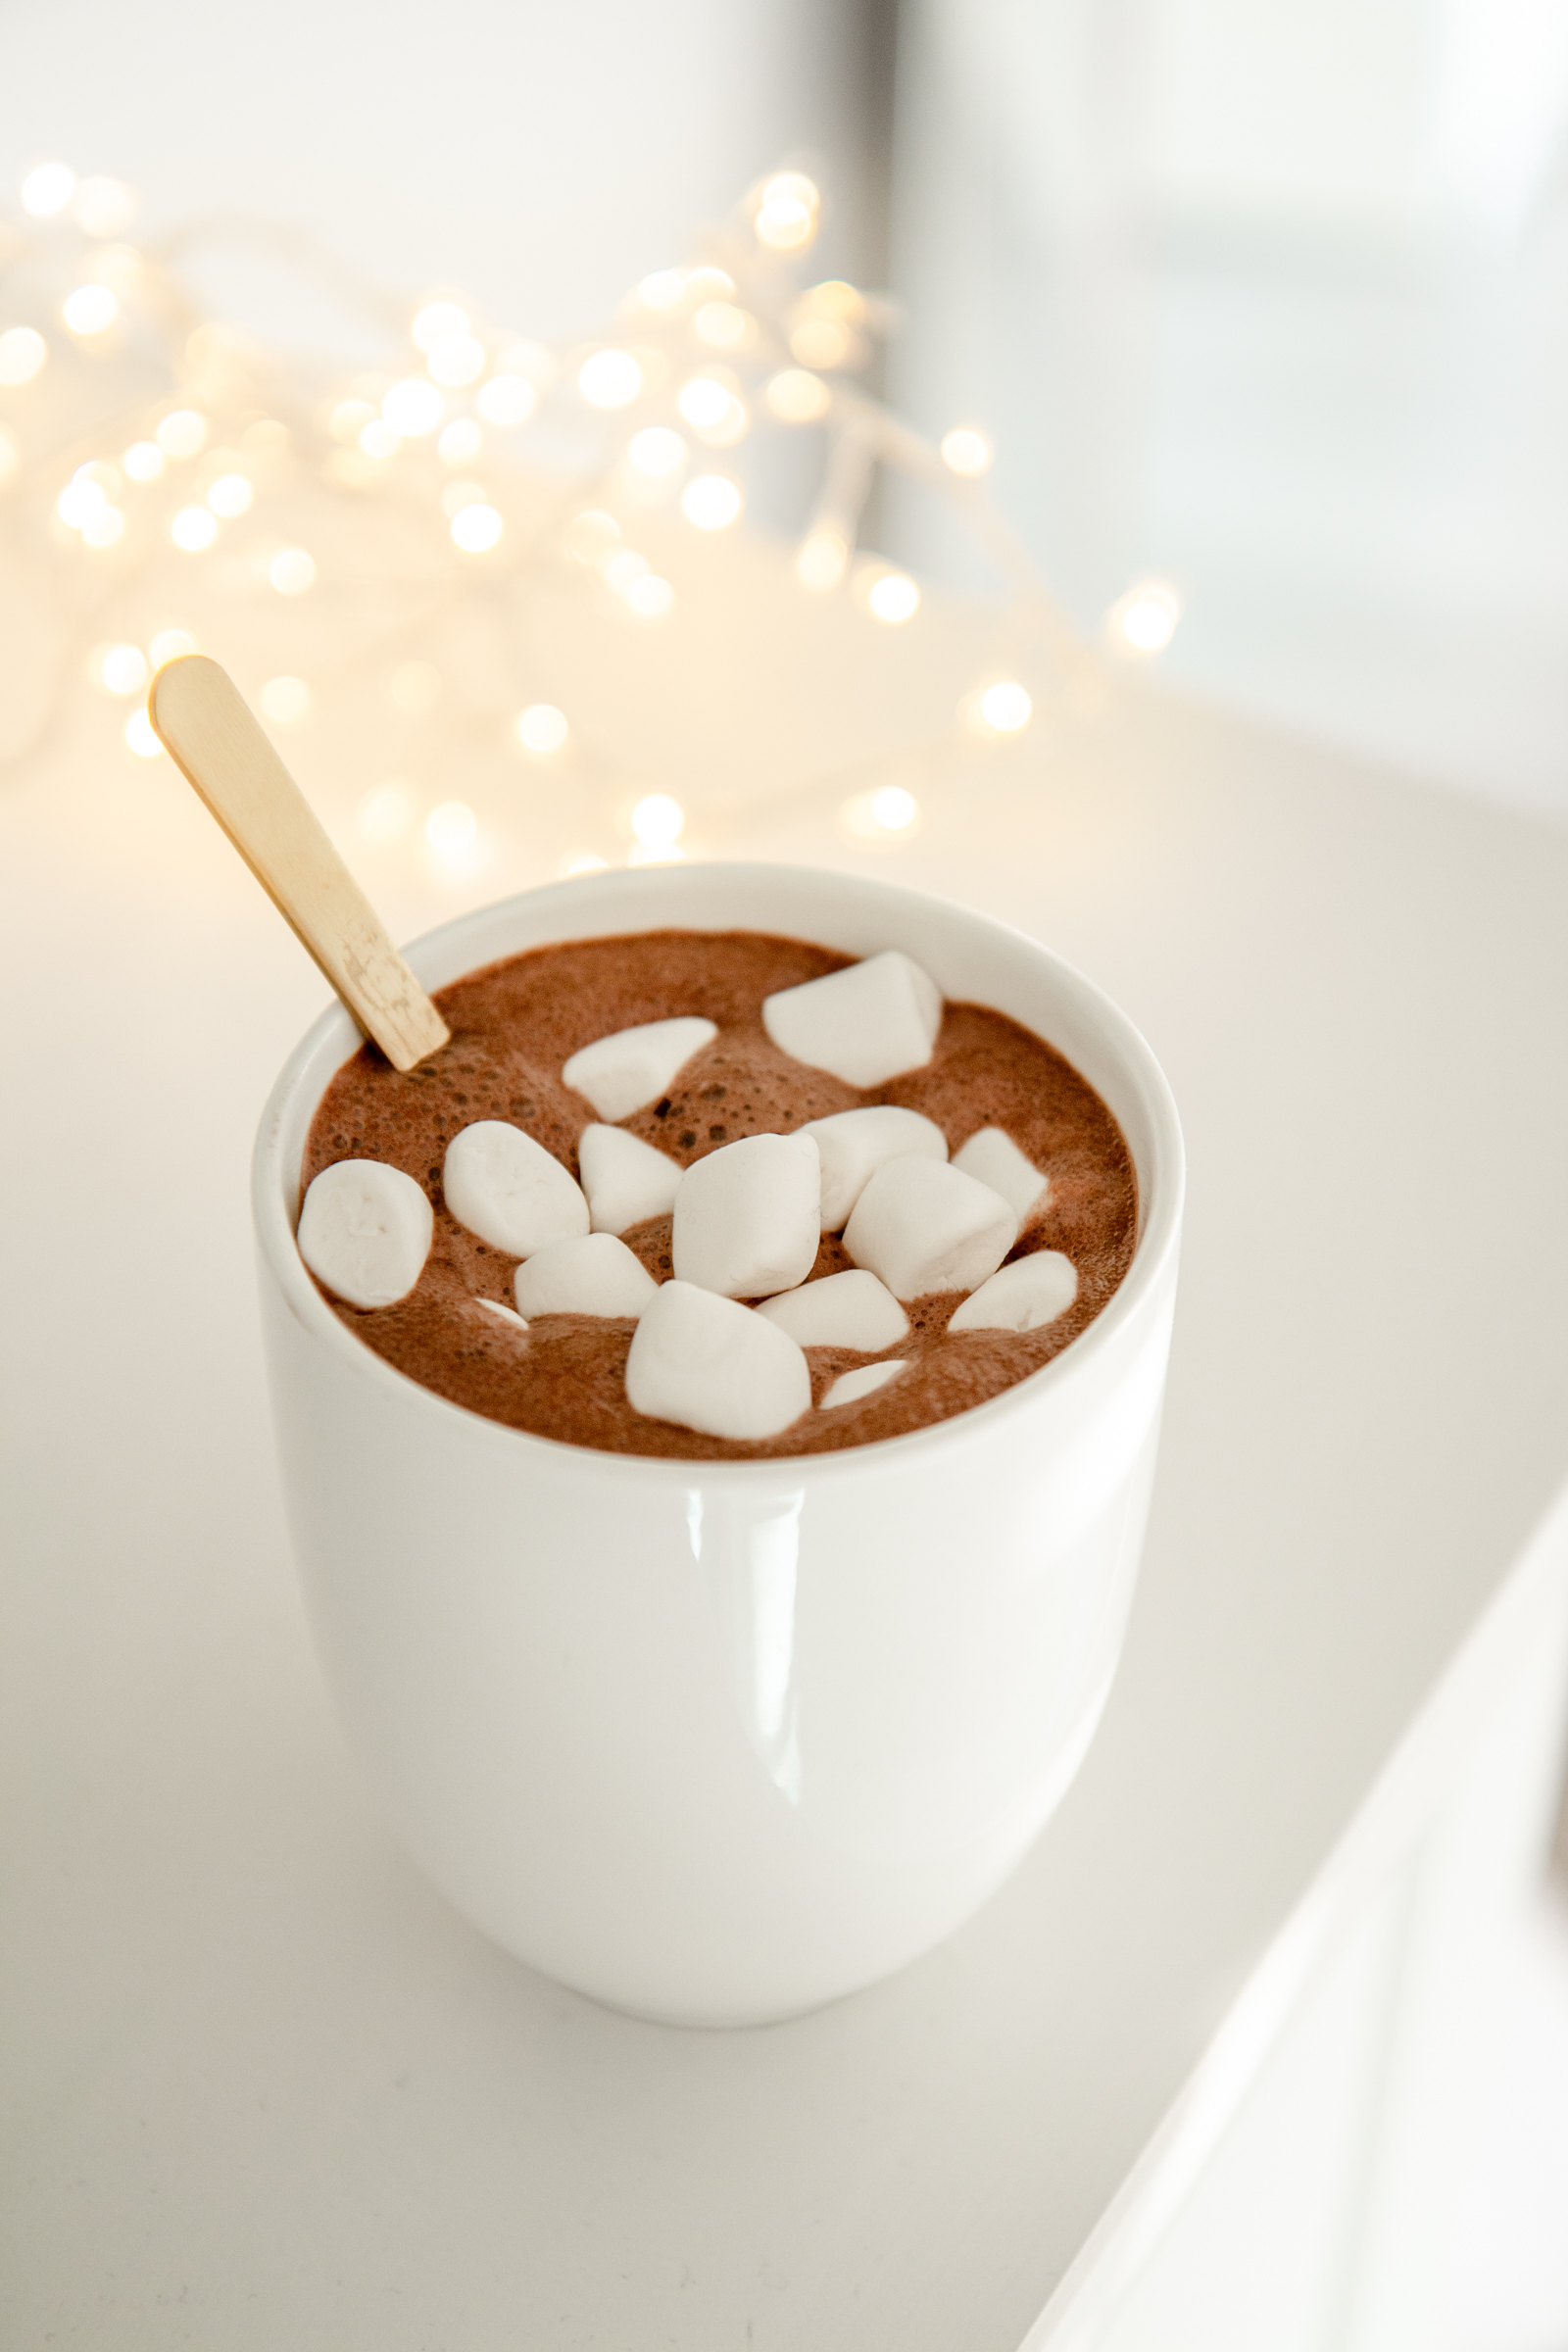 Chocolat chaud aux marshmallows : Recette de Chocolat chaud aux